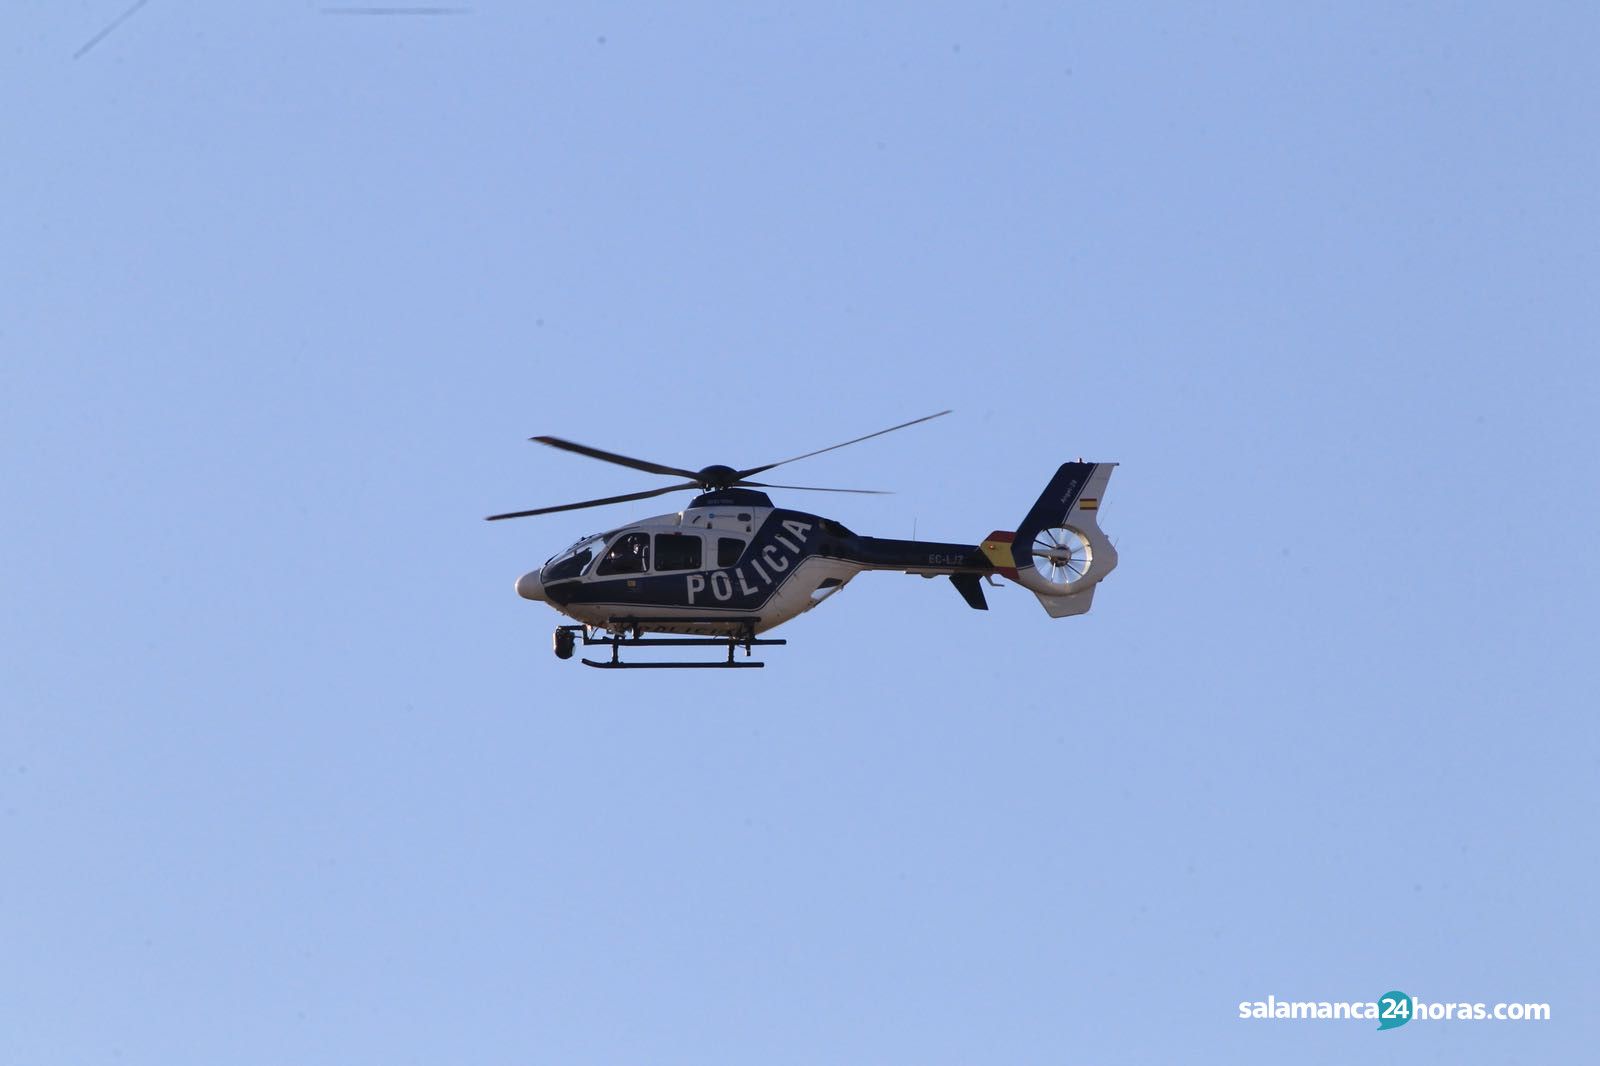  Búsqueda del joven desaparecido por helicóptero (15) 